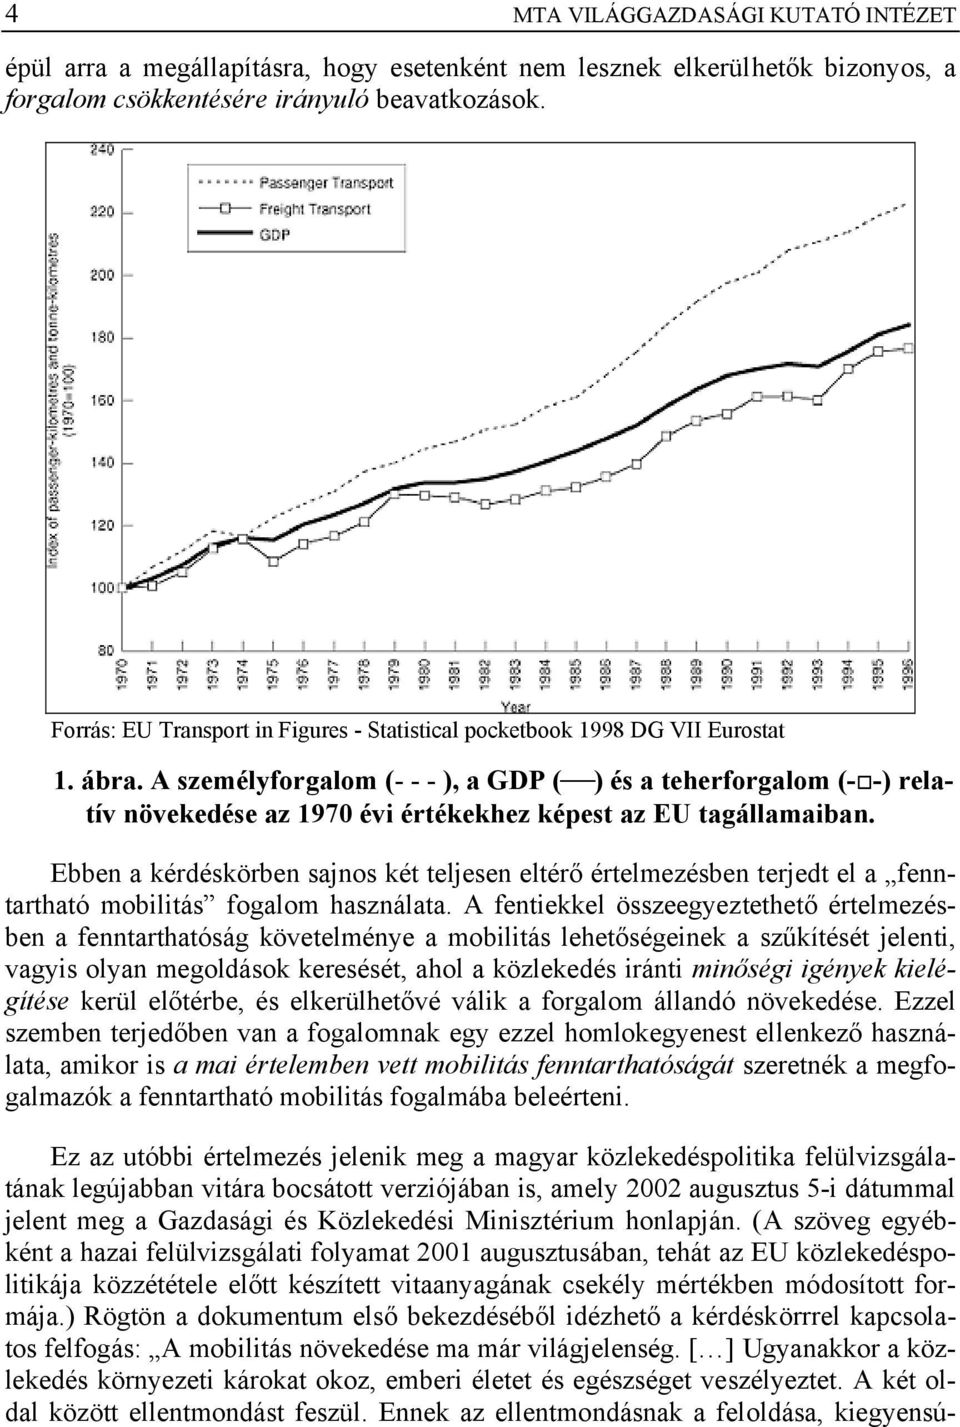 A személyforgalom (- - - ), a GDP ( ) és a teherforgalom (- -) relatív növekedése az 1970 évi értékekhez képest az EU tagállamaiban.